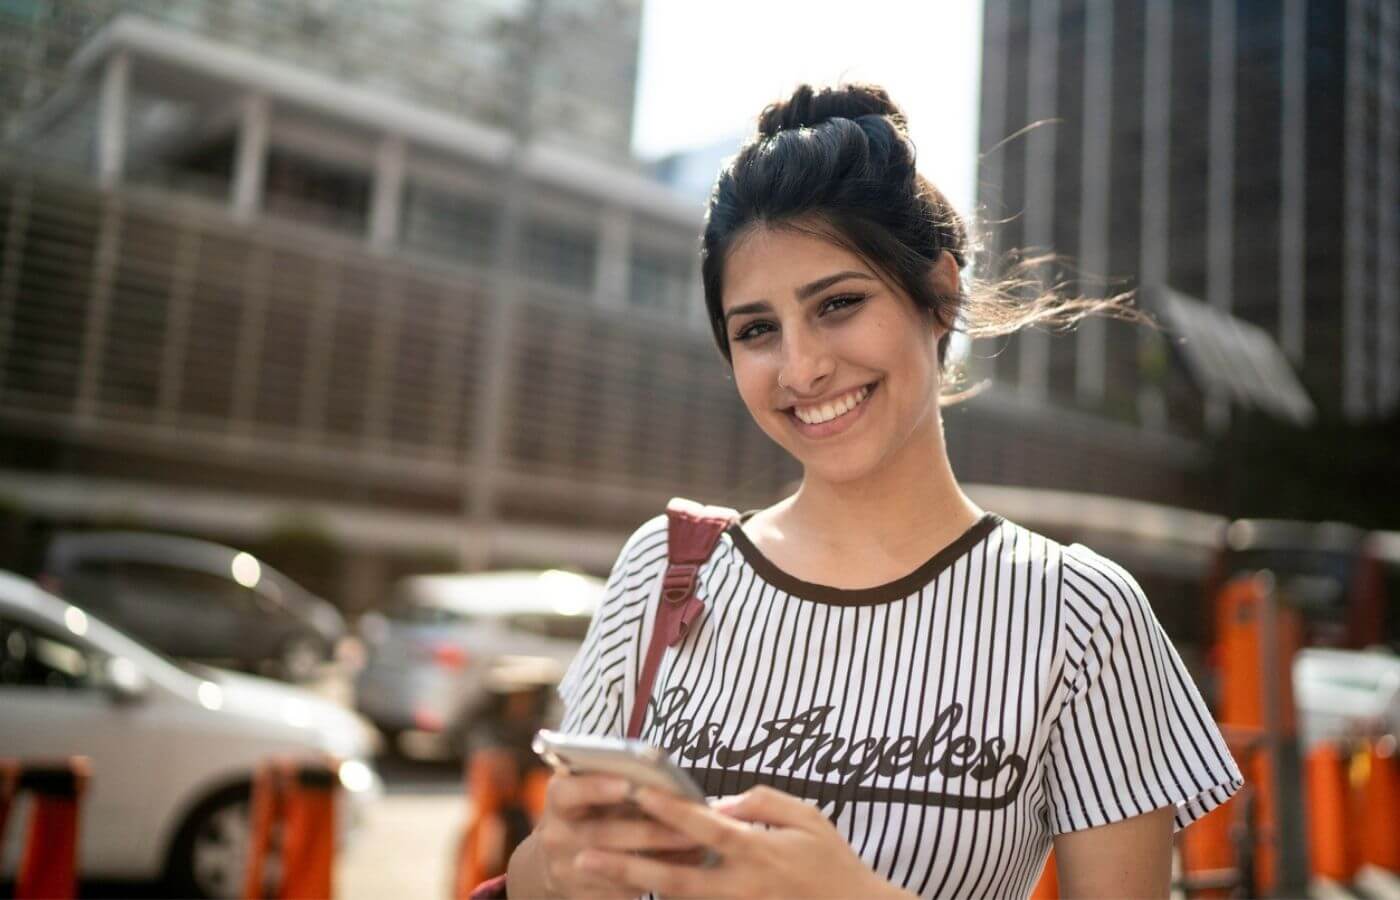 Mulher segurando um celular enquanto sorri. E segundo plano está uma rua com carros e alguns prédios desfocados